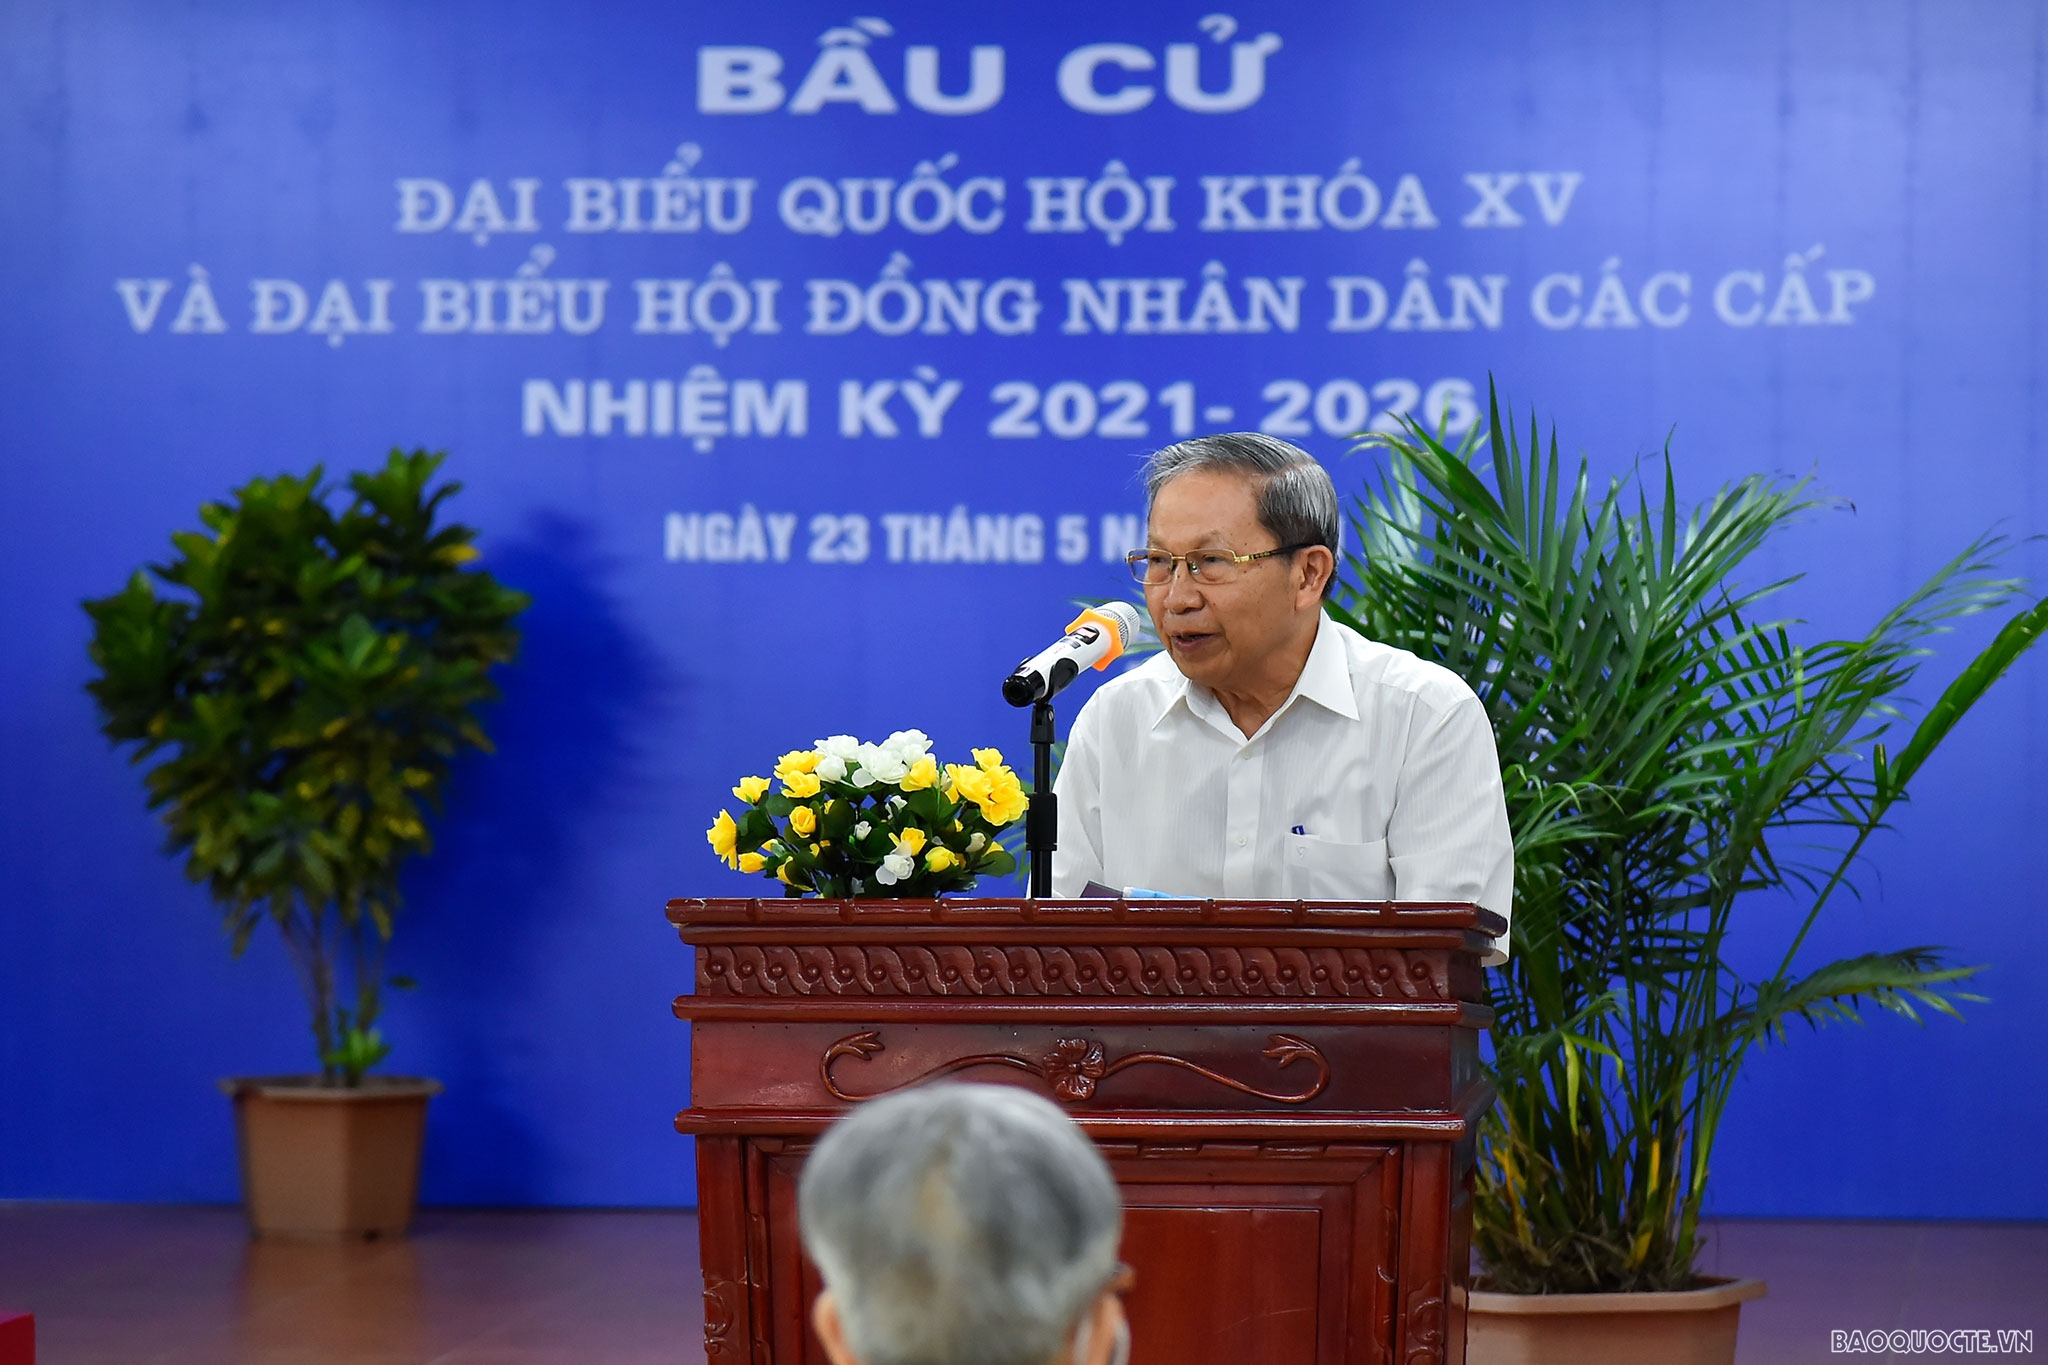 Bộ trưởng Ngoại giao Bùi Thanh Sơn tham gia bỏ phiếu bầu cử tại quận Nam Từ Liêm, Hà Nội